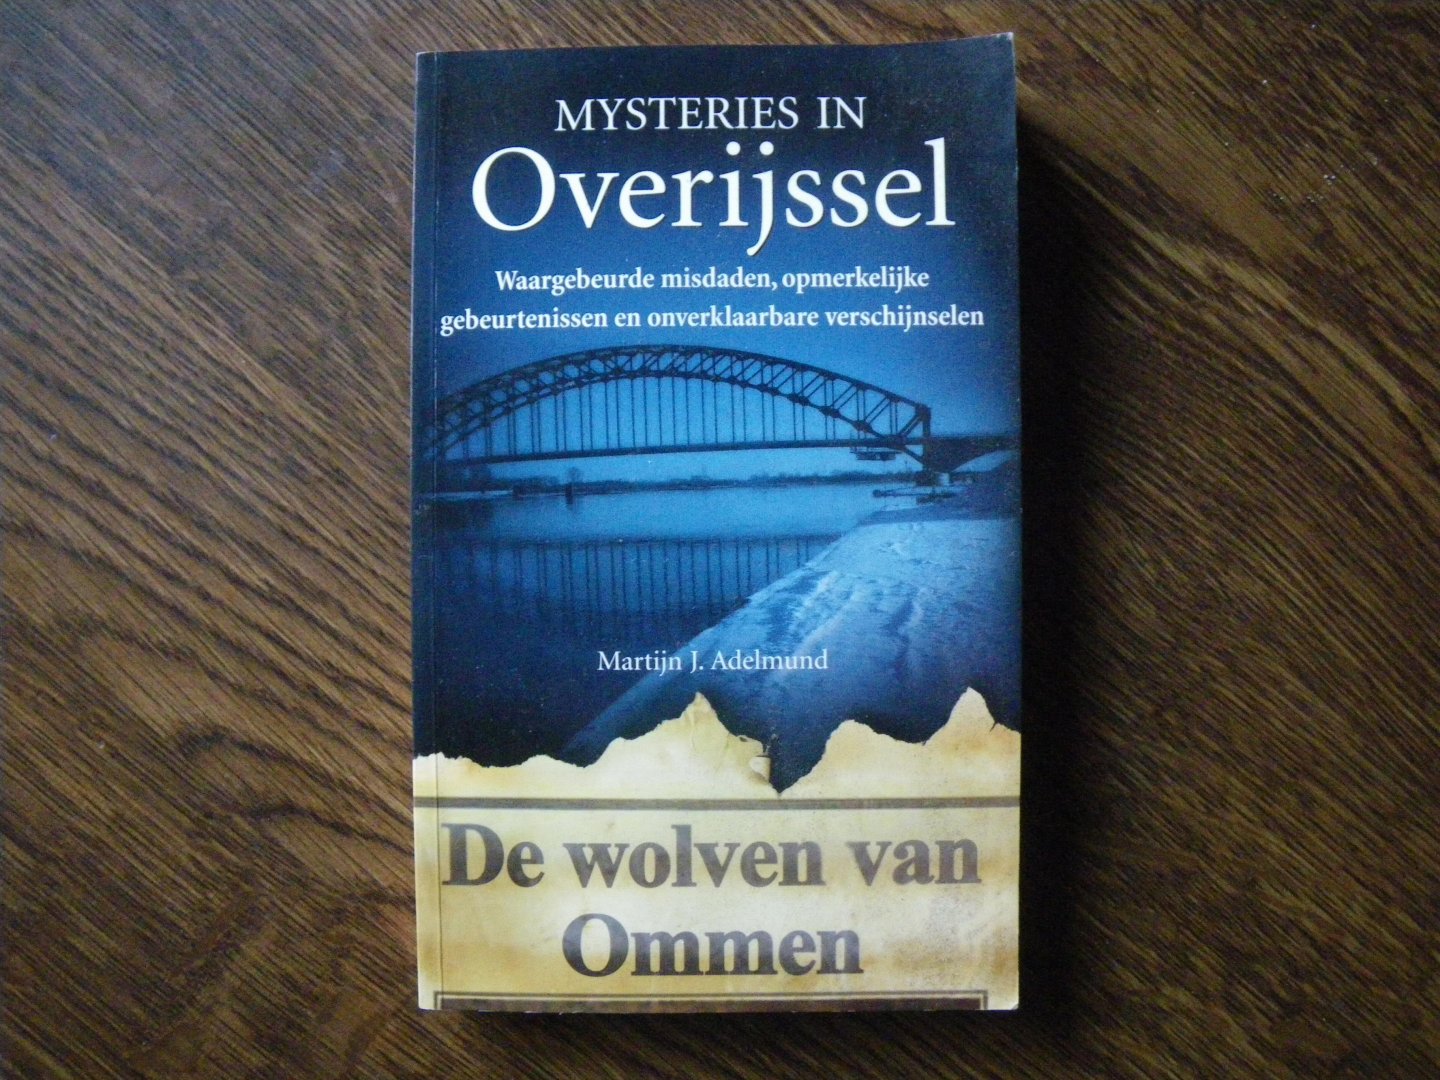 Adelmund, Martijn J. - Mysteries in Overijssel. De wolven van Ommen